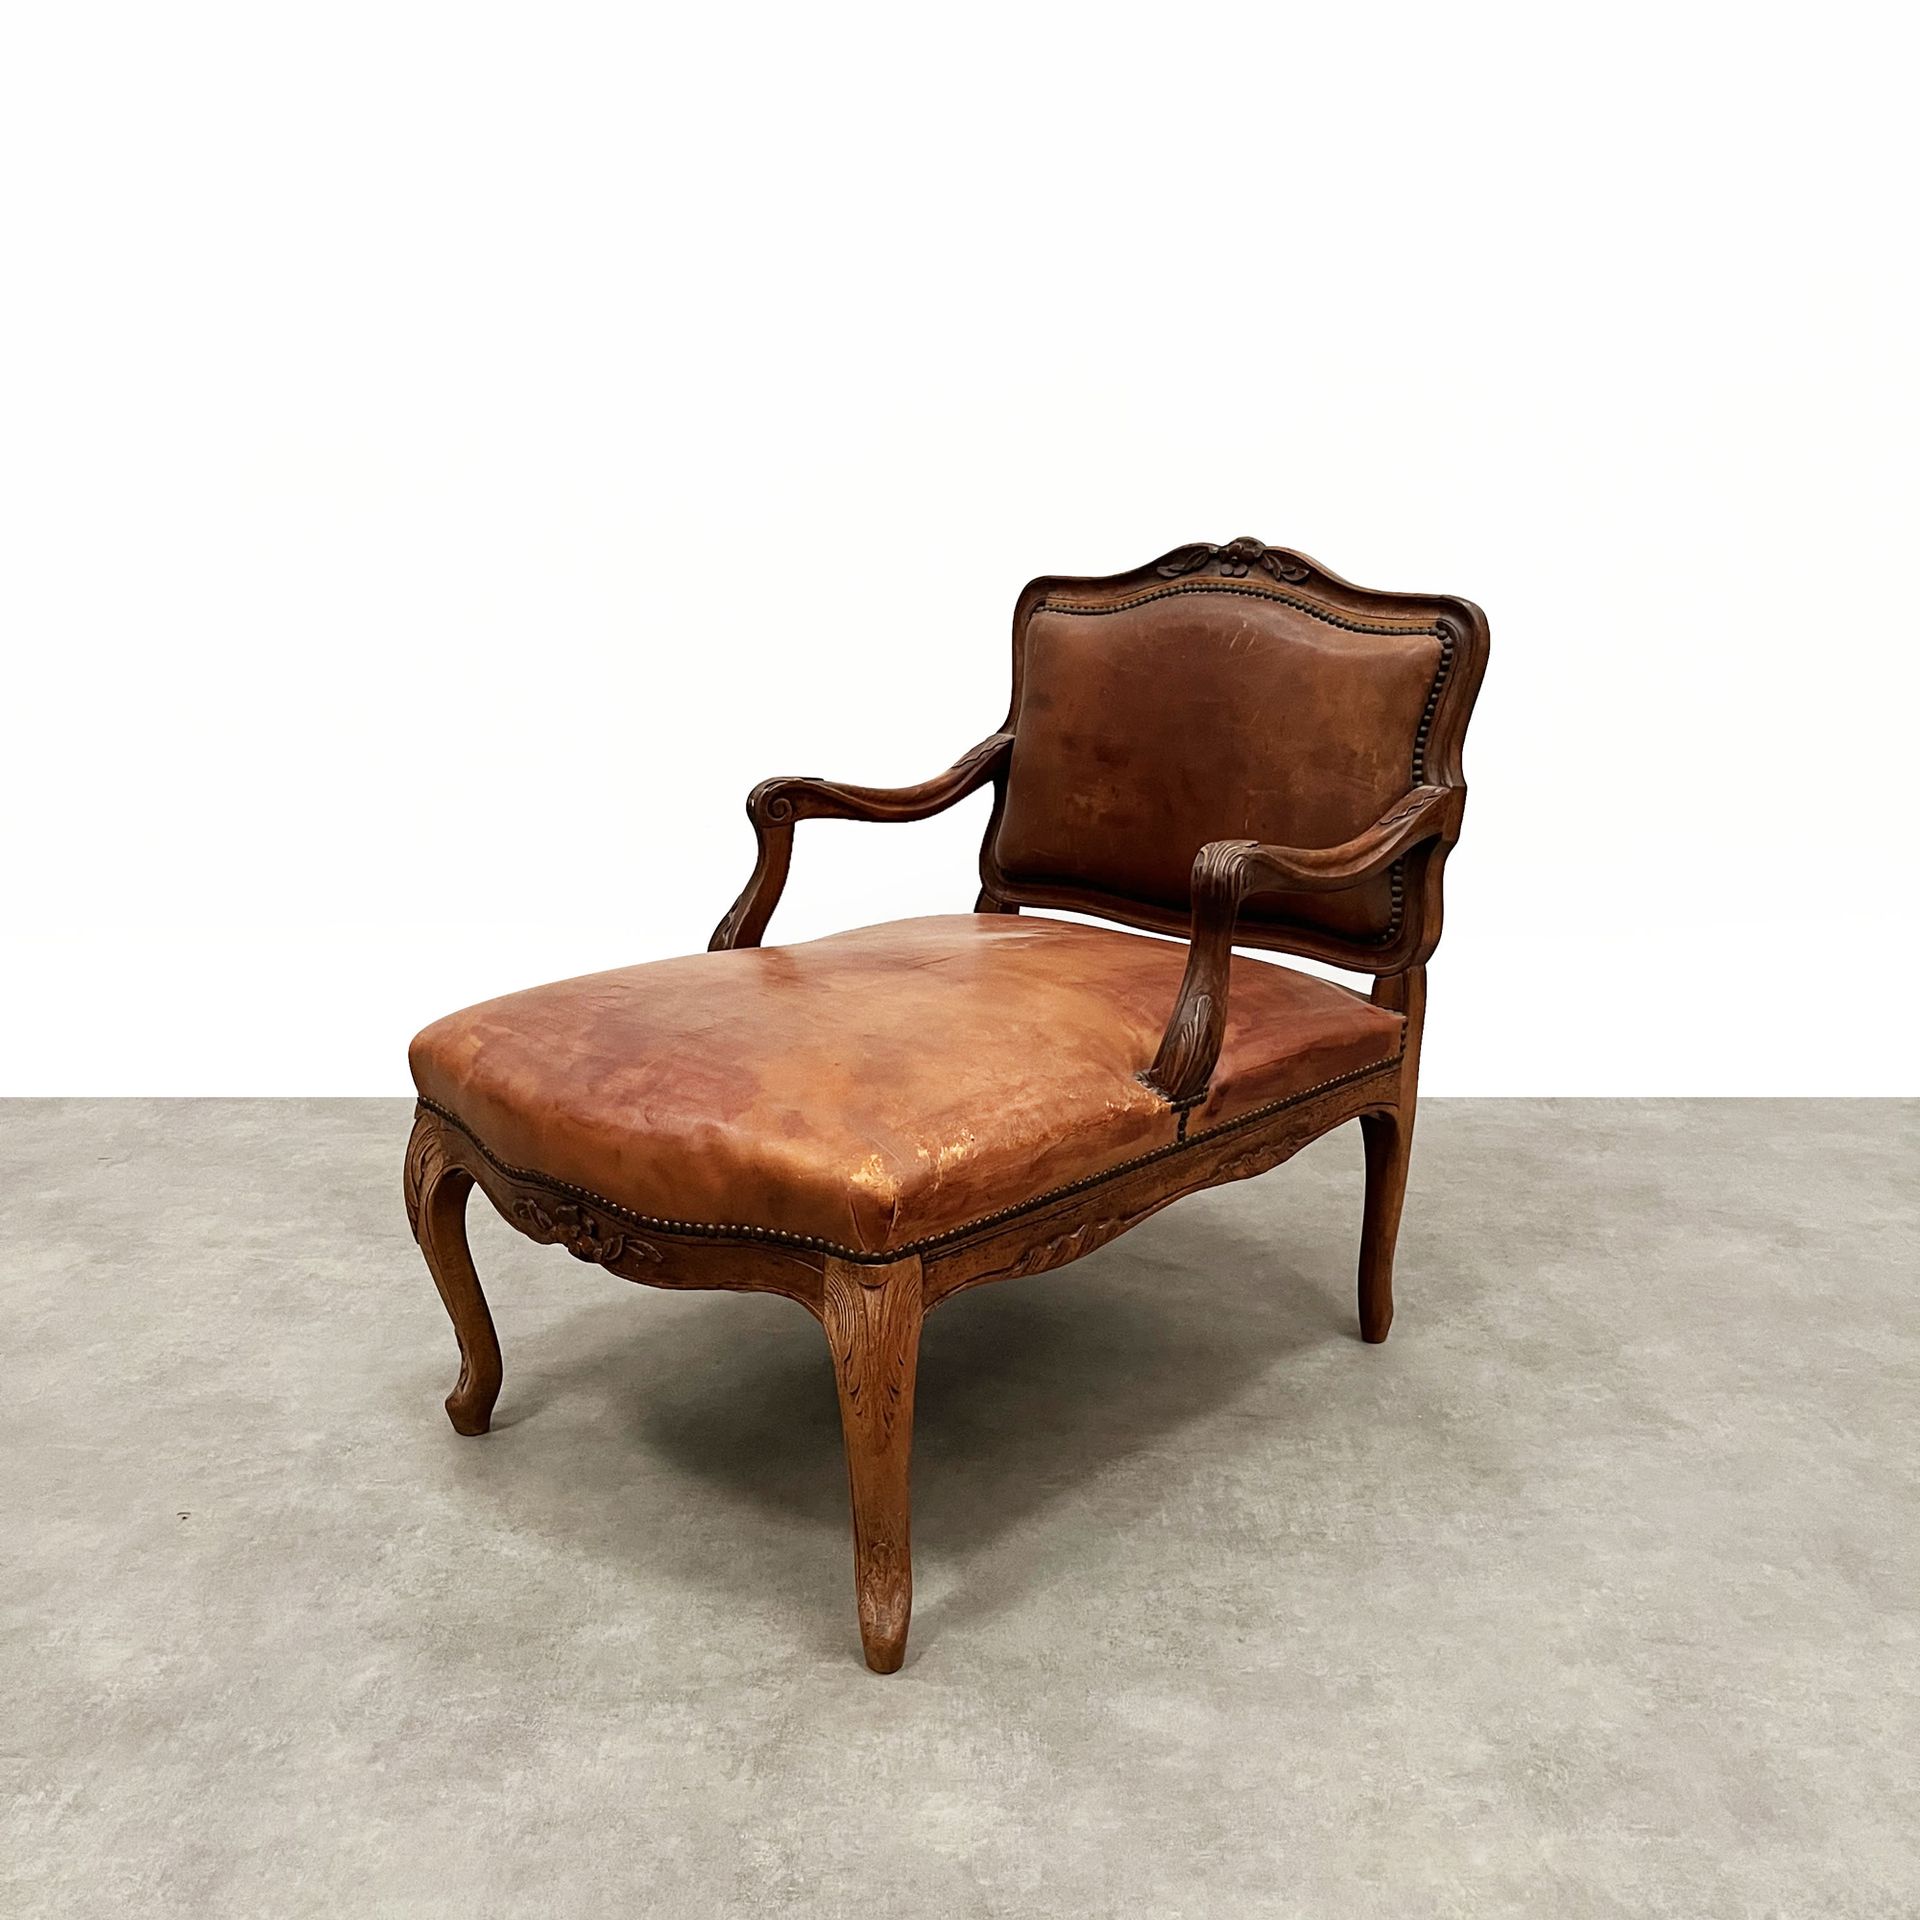 Null Chaise longue in legno naturale modellato e intagliato, rivestimento in pel&hellip;